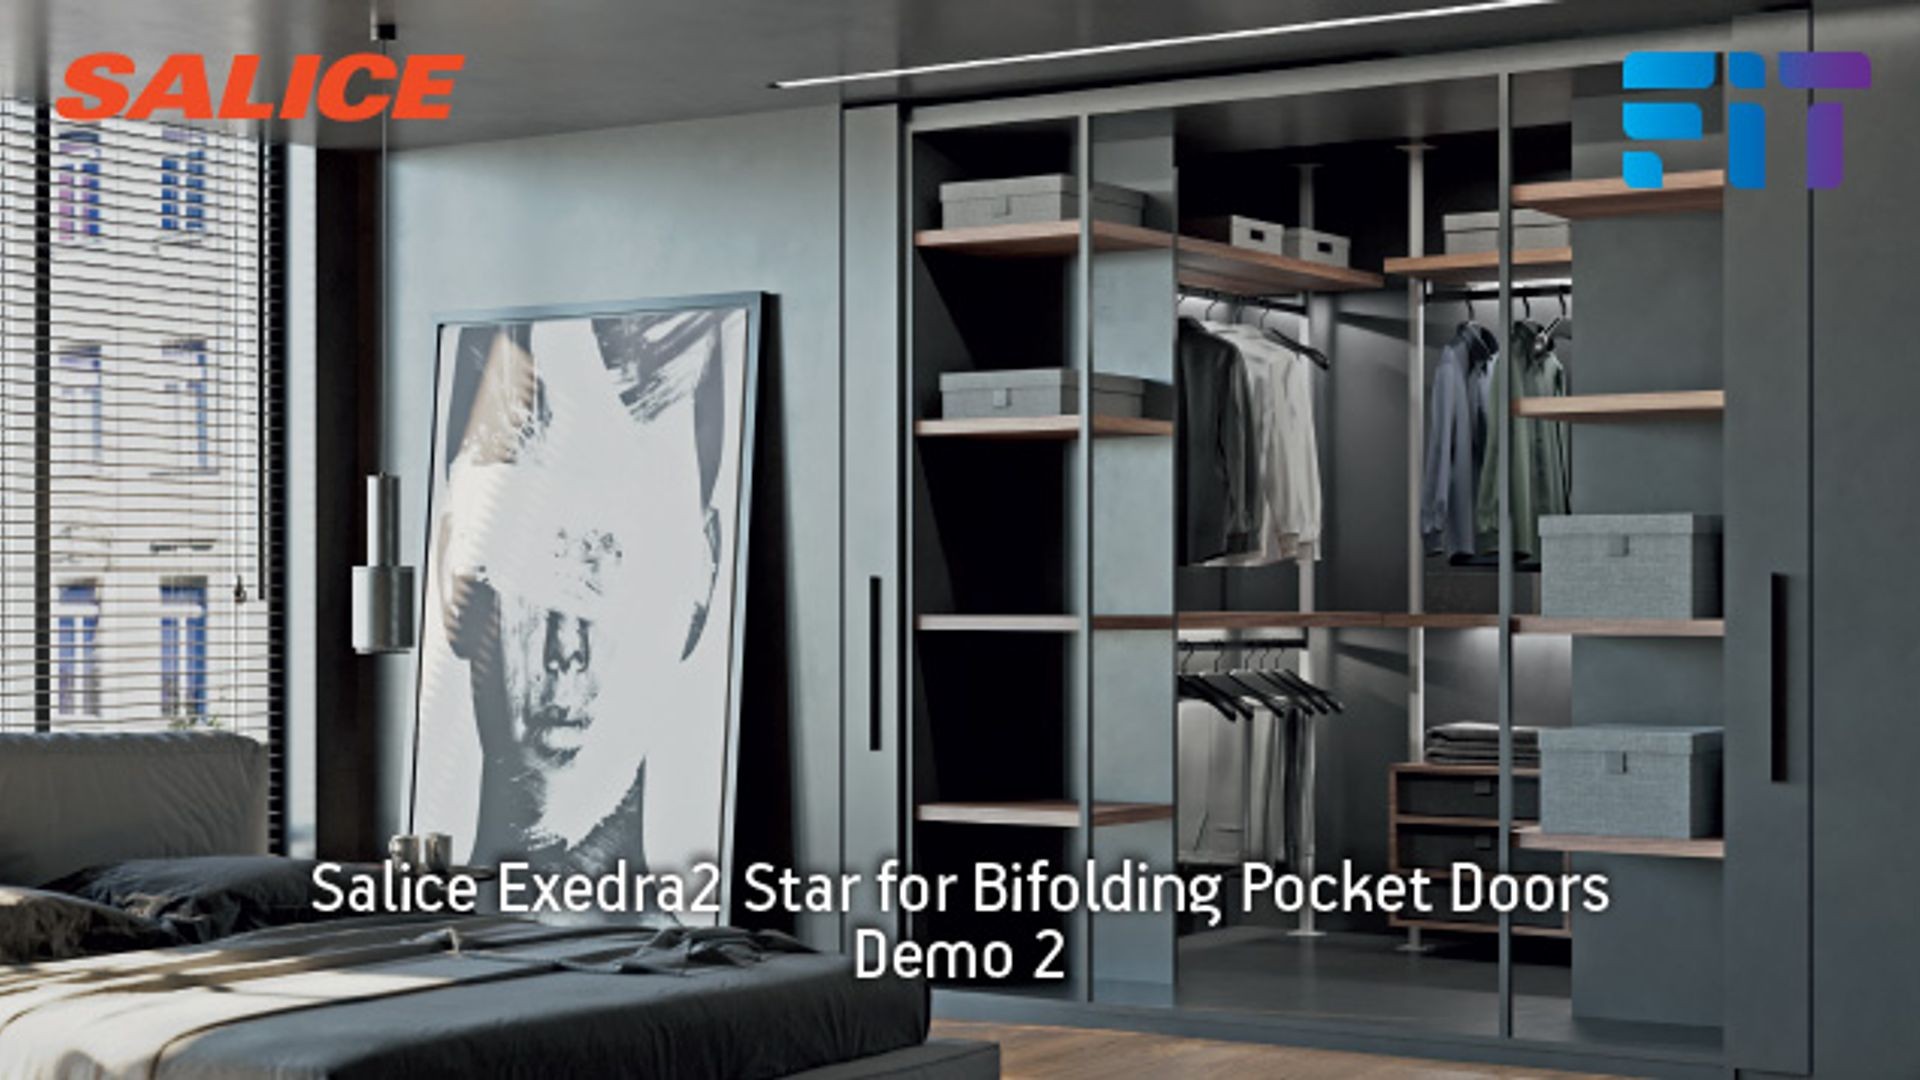 Salice Exedra2 Bifolding Pocket Door gallery detail image